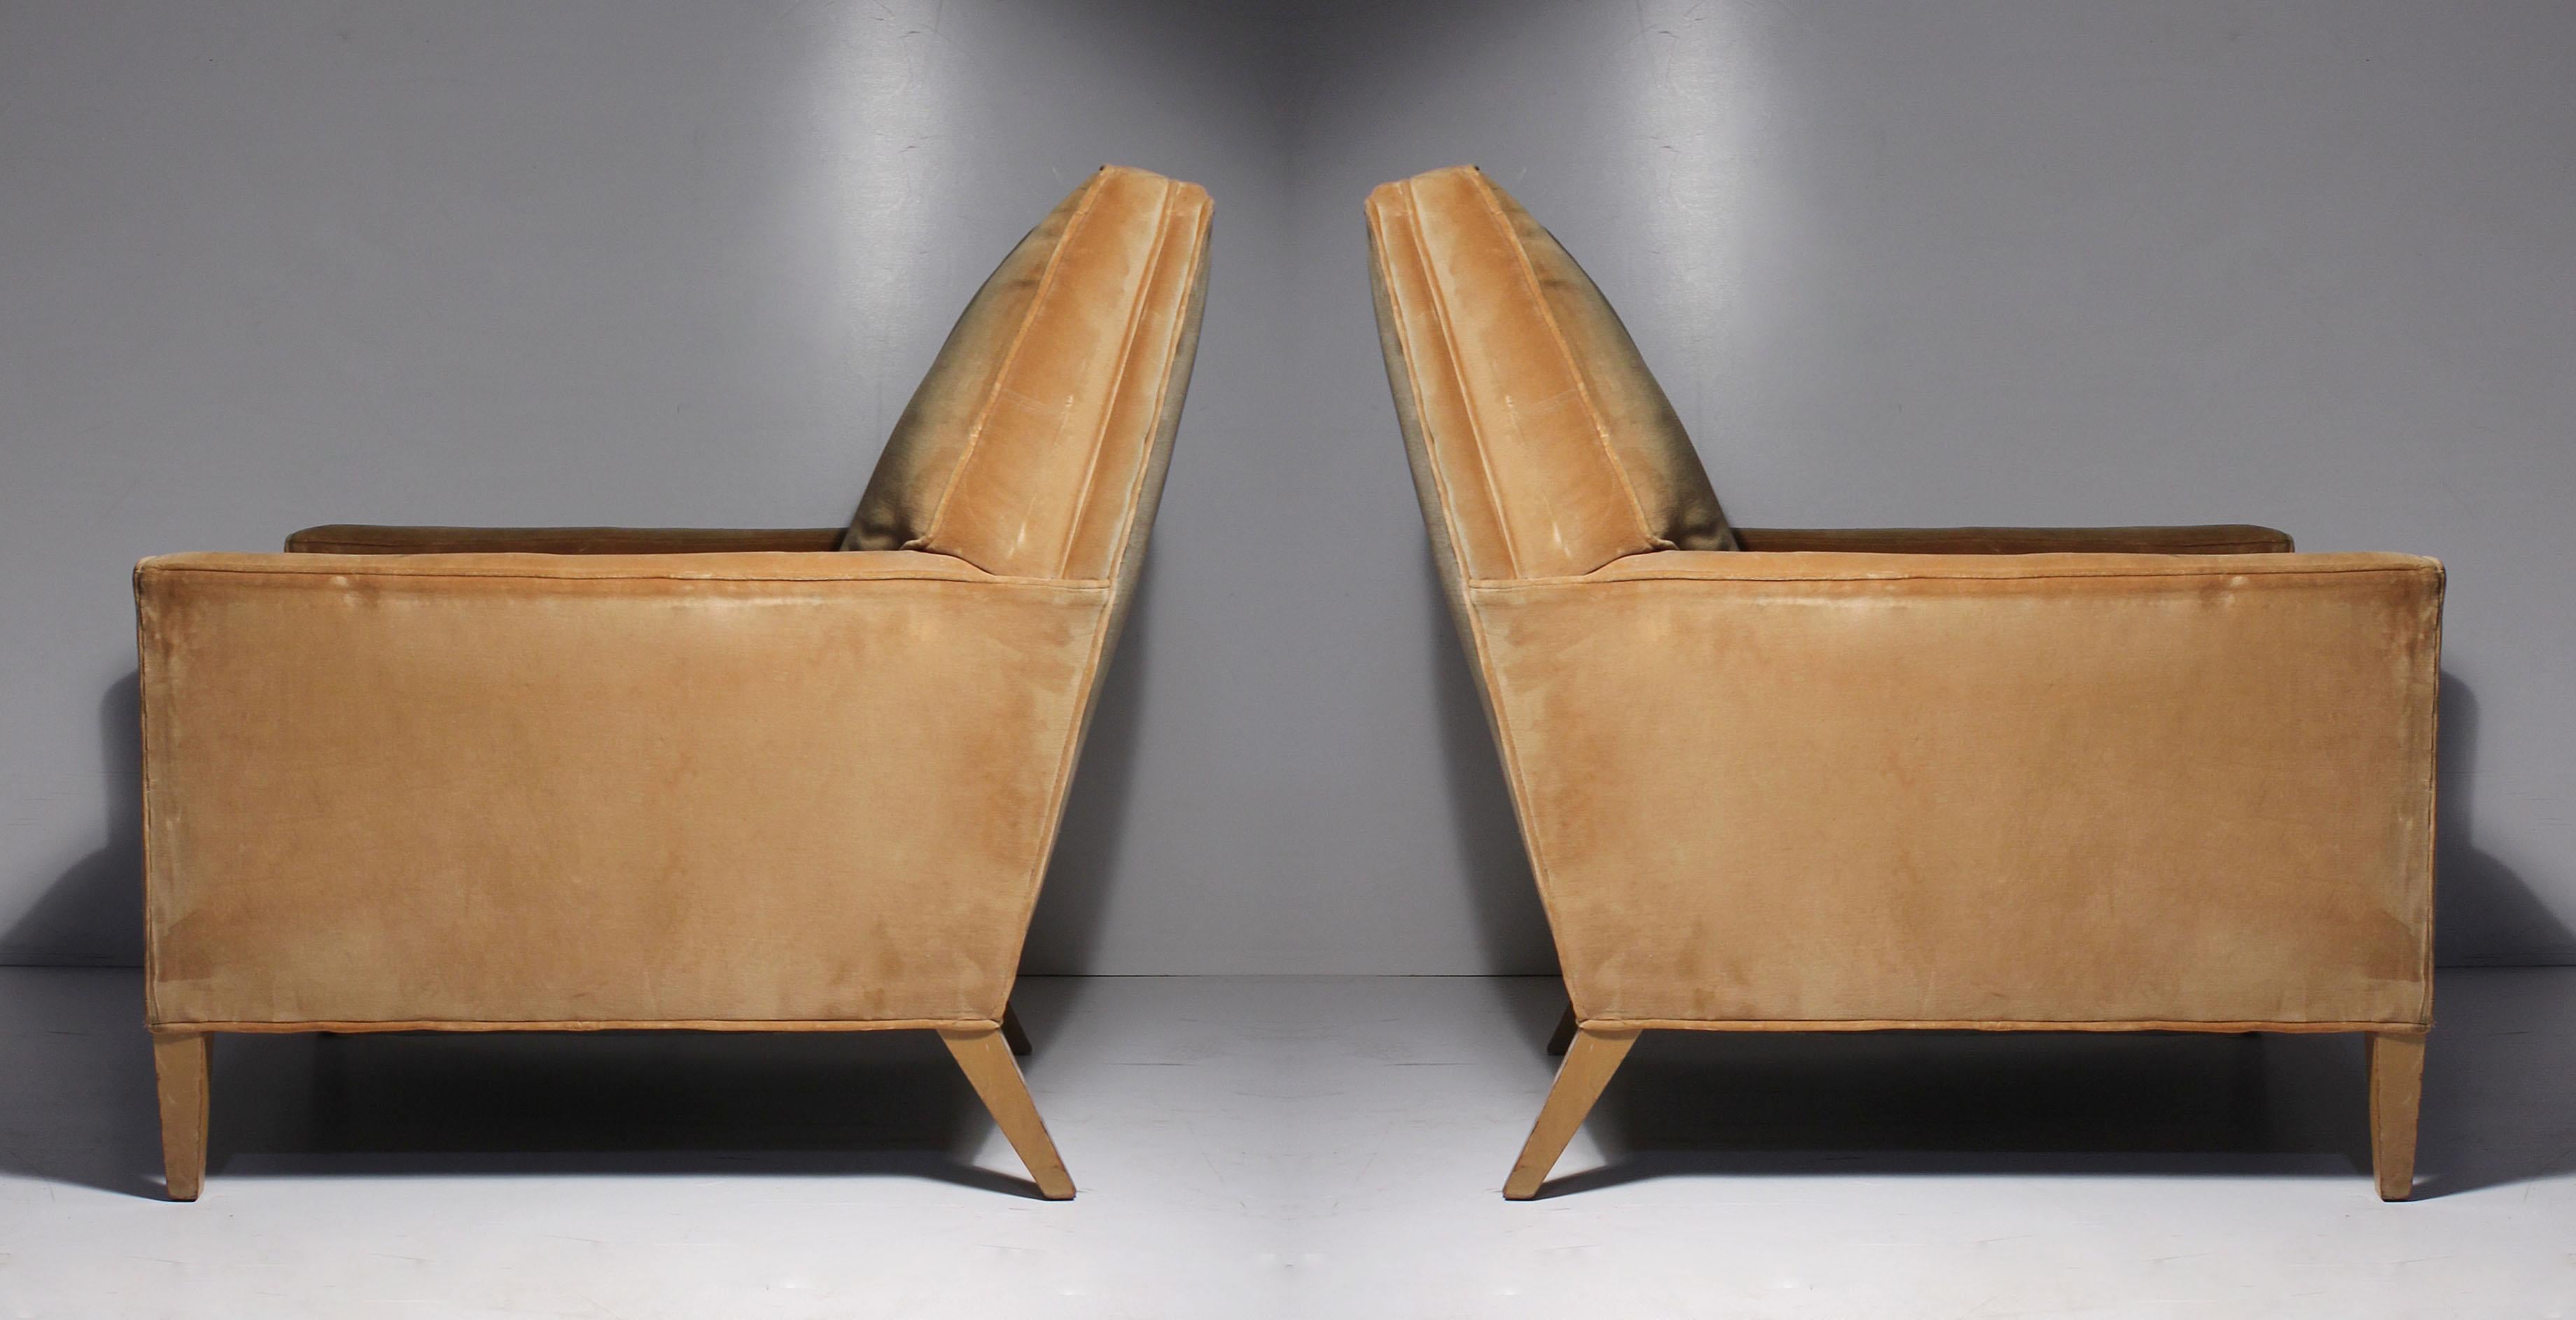 Ein Paar Vintage Robsjohn Gibbings Lounge Chair für Widdicomb. Schöne Proportionen. Eine eher seltene Form der tiefen Lounge. Verjüngte Vorder- und Hinterbeine. Elegant und modern.

Kürzlich wurde ein 2. Stuhl erworben, der kürzlich mit White Muslim